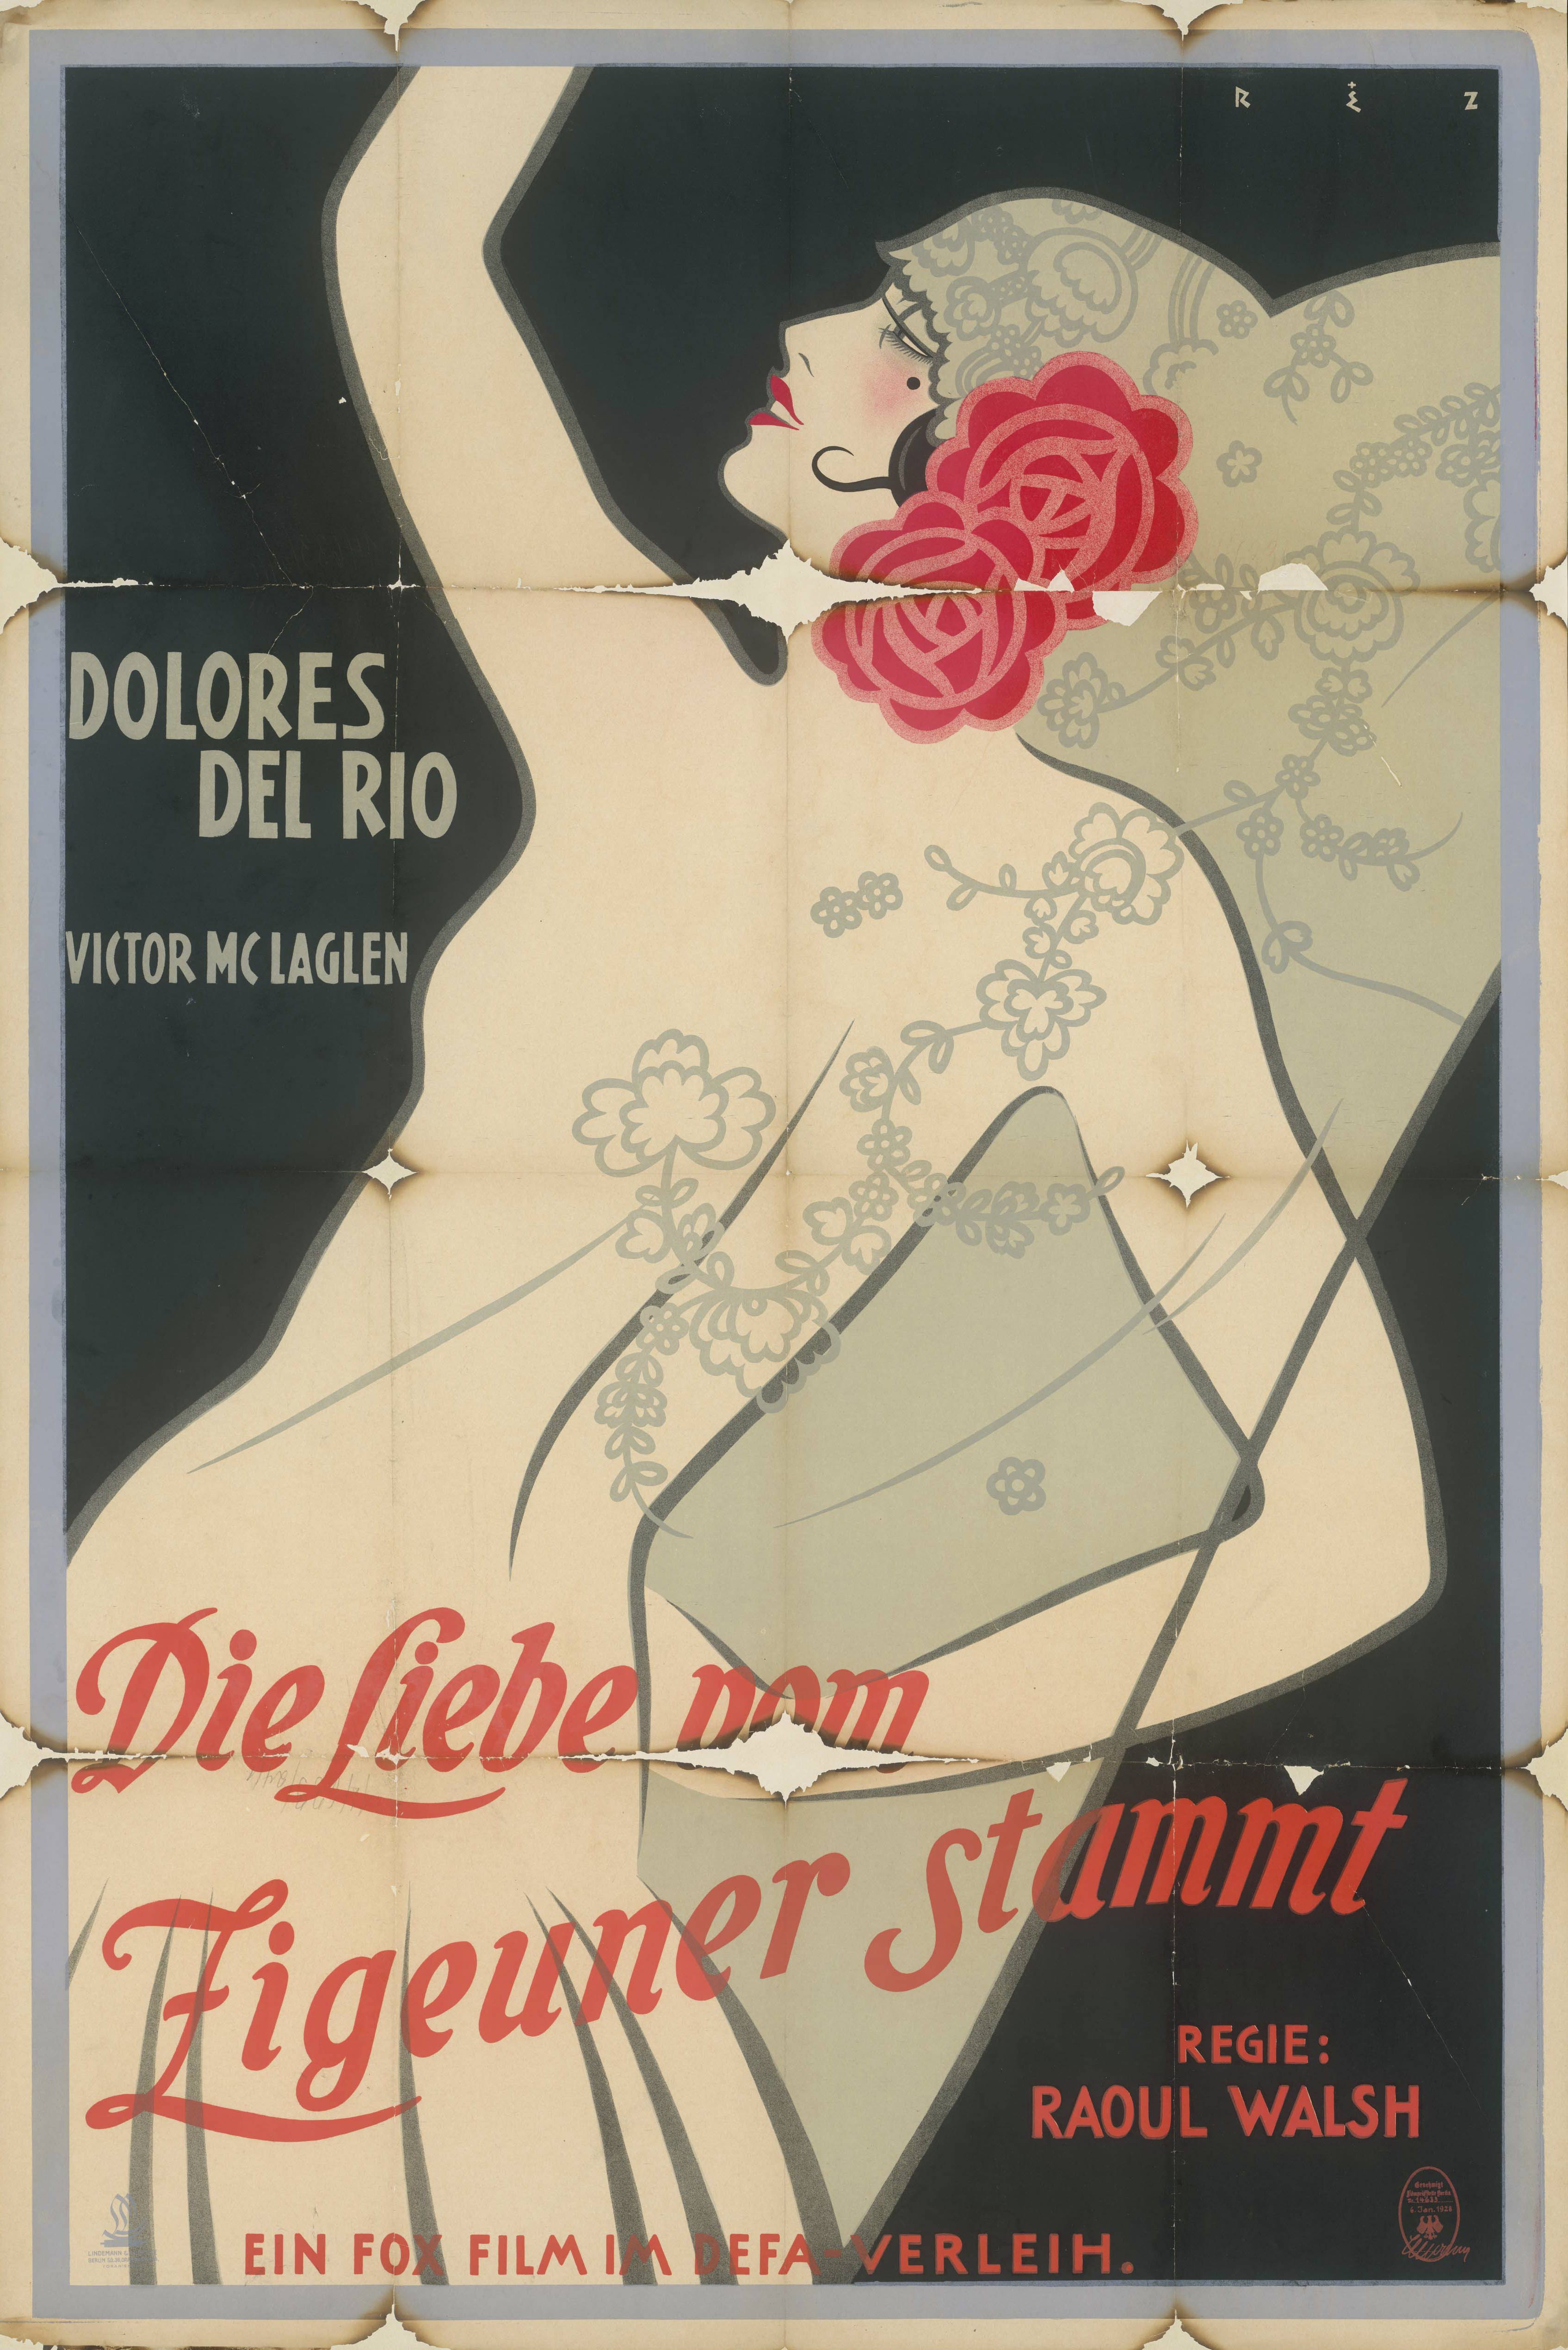 Film poster for Loves of Carmen, USA 1927